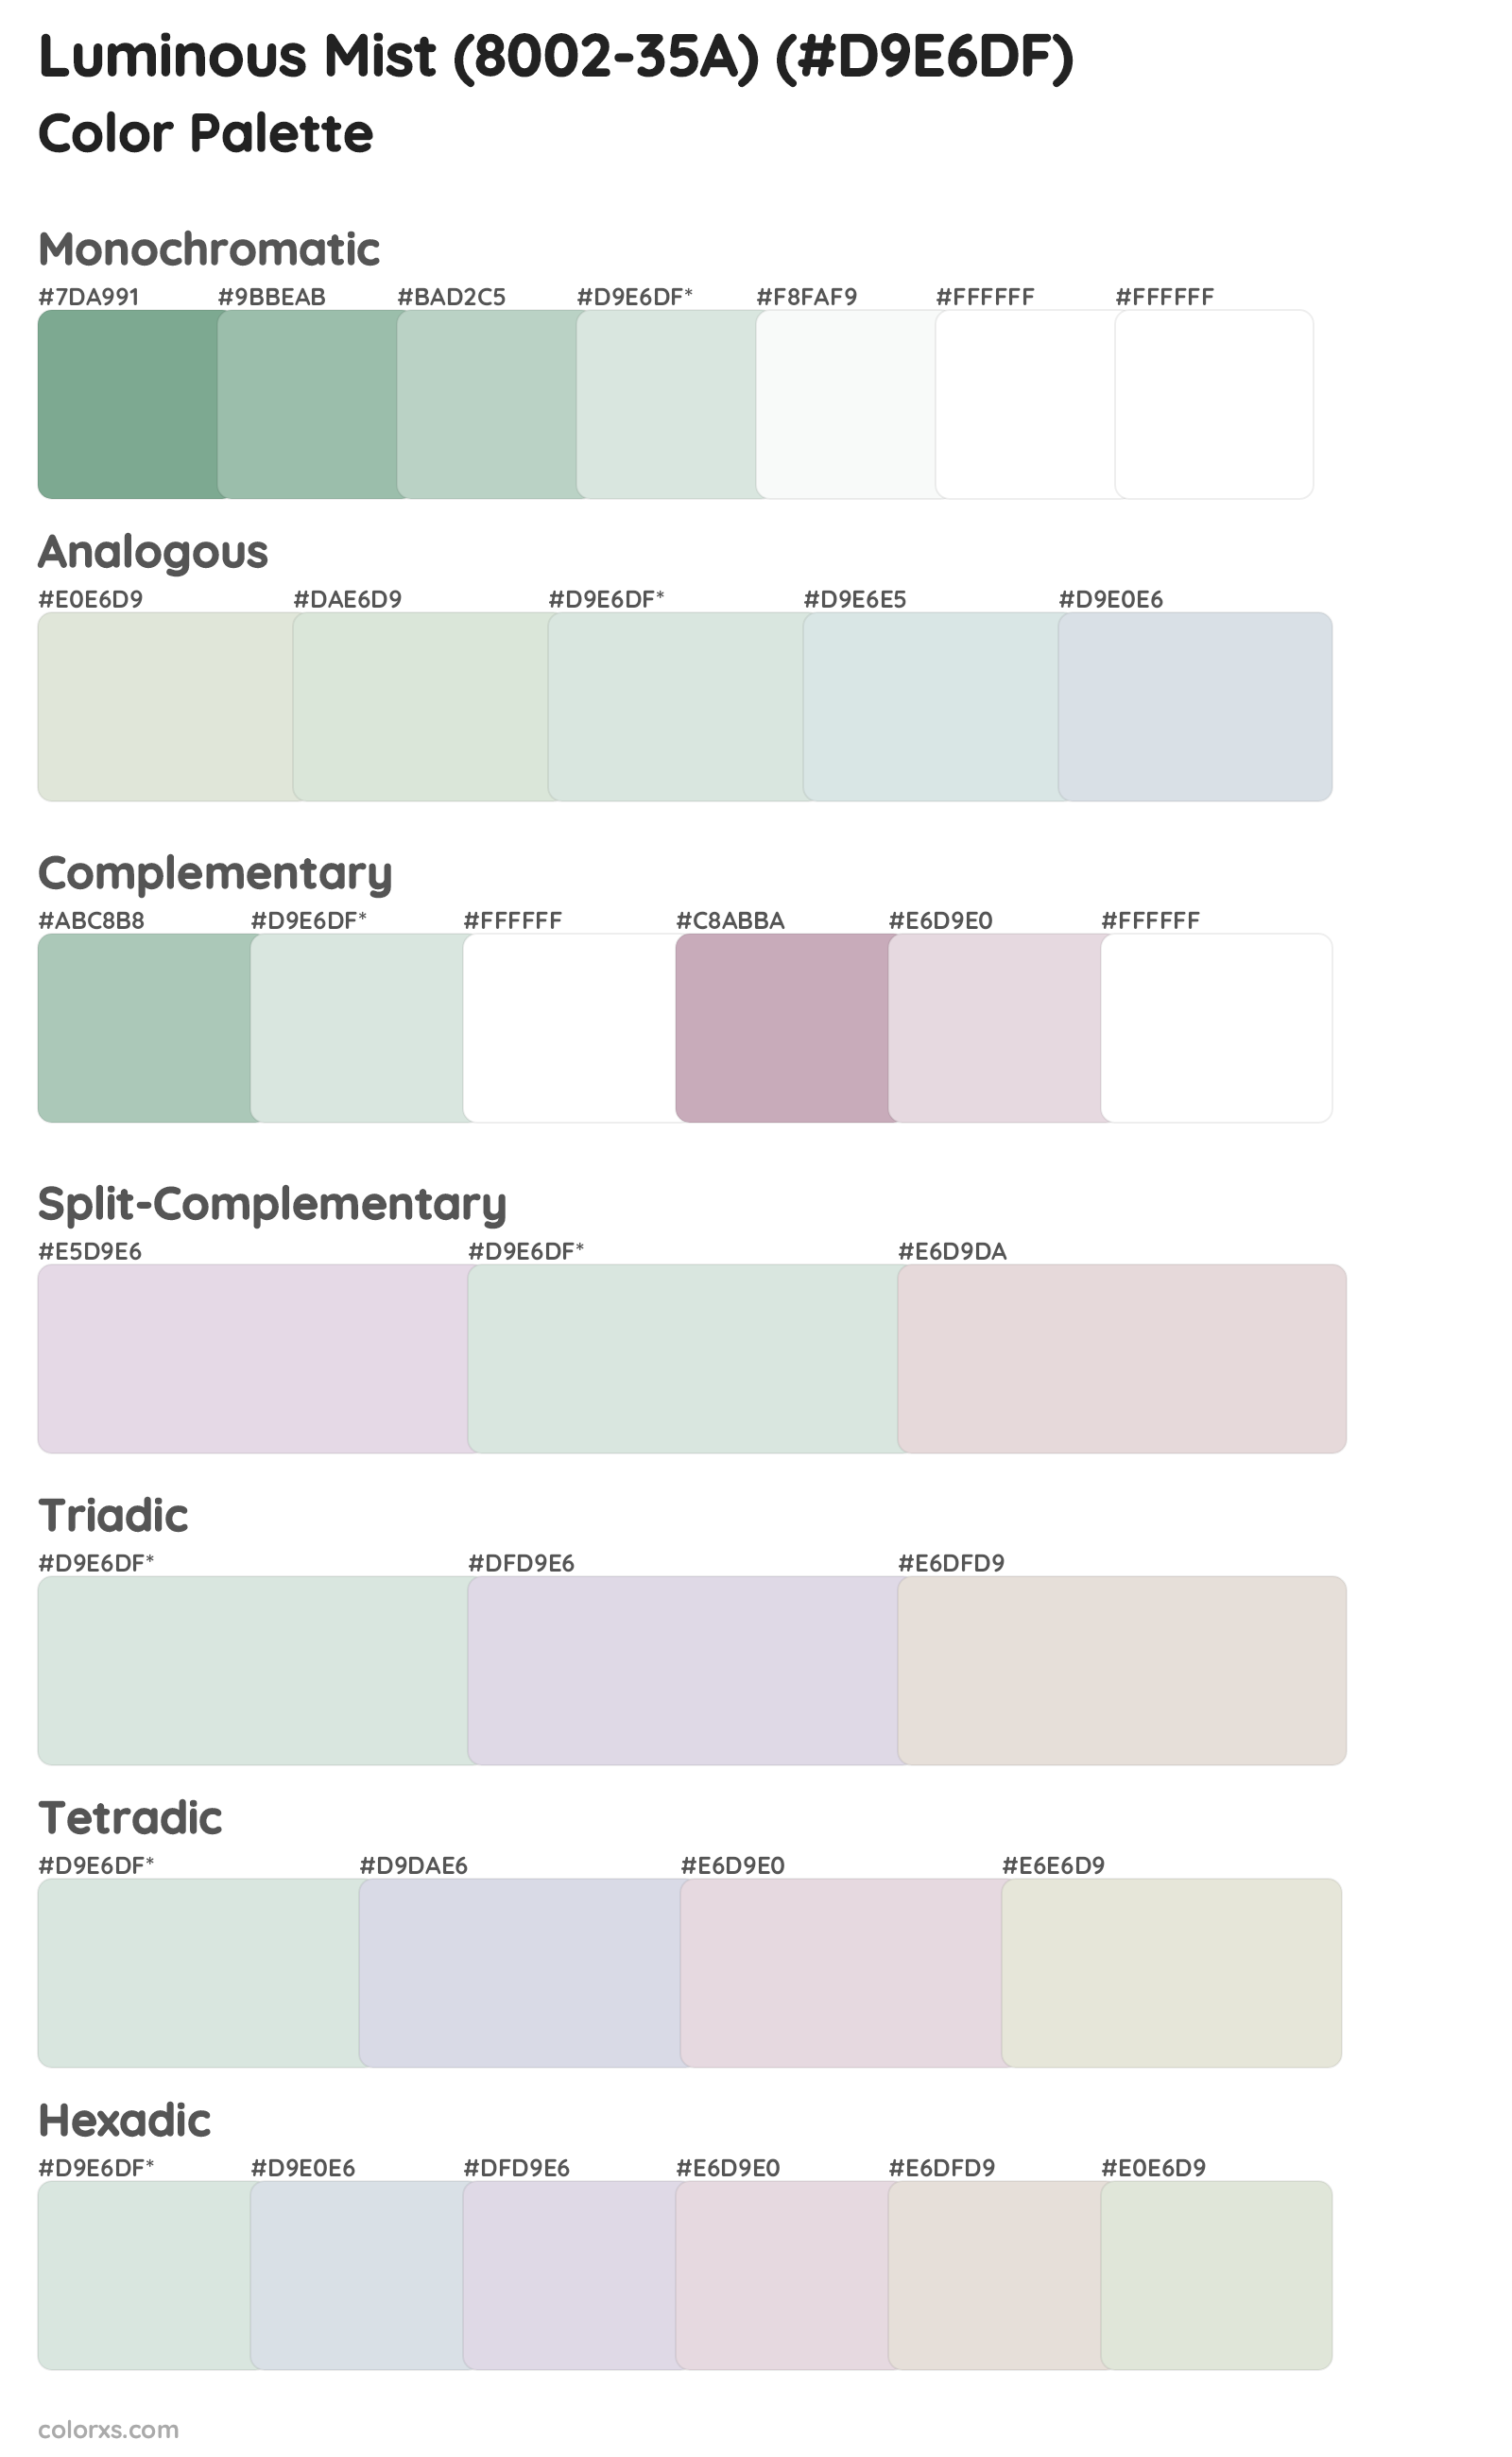 Luminous Mist (8002-35A) Color Scheme Palettes